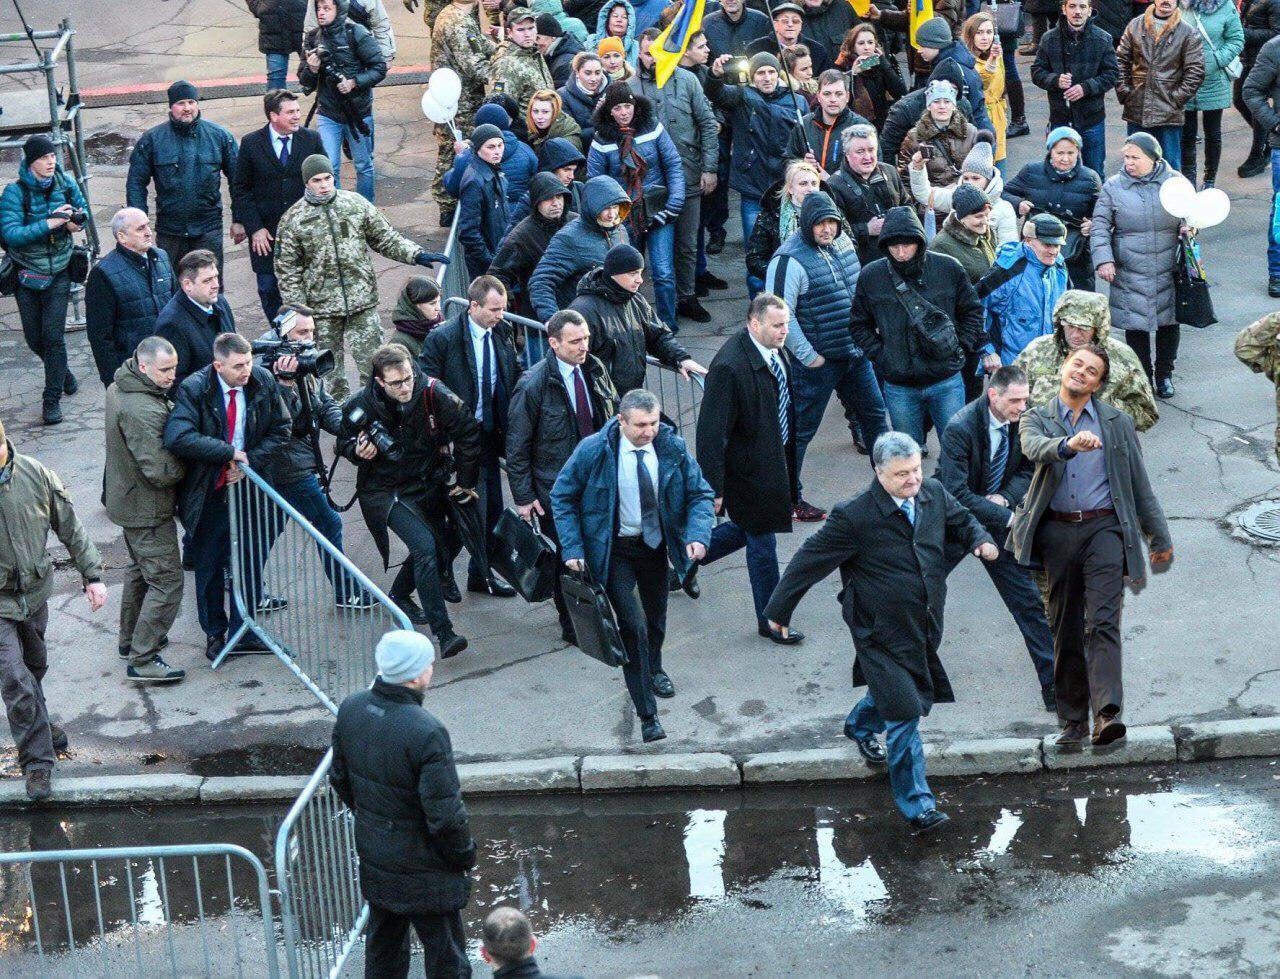 Після того як в мережі з'явилася фотографія, як 11 березня президент України Петро Порошенко нібито втік зі свого мітингу з виборцями в Житомирі, знімок не тільки викликав бурхливу хвилю обговорень, а й став основою для безлічі фотожаб.
